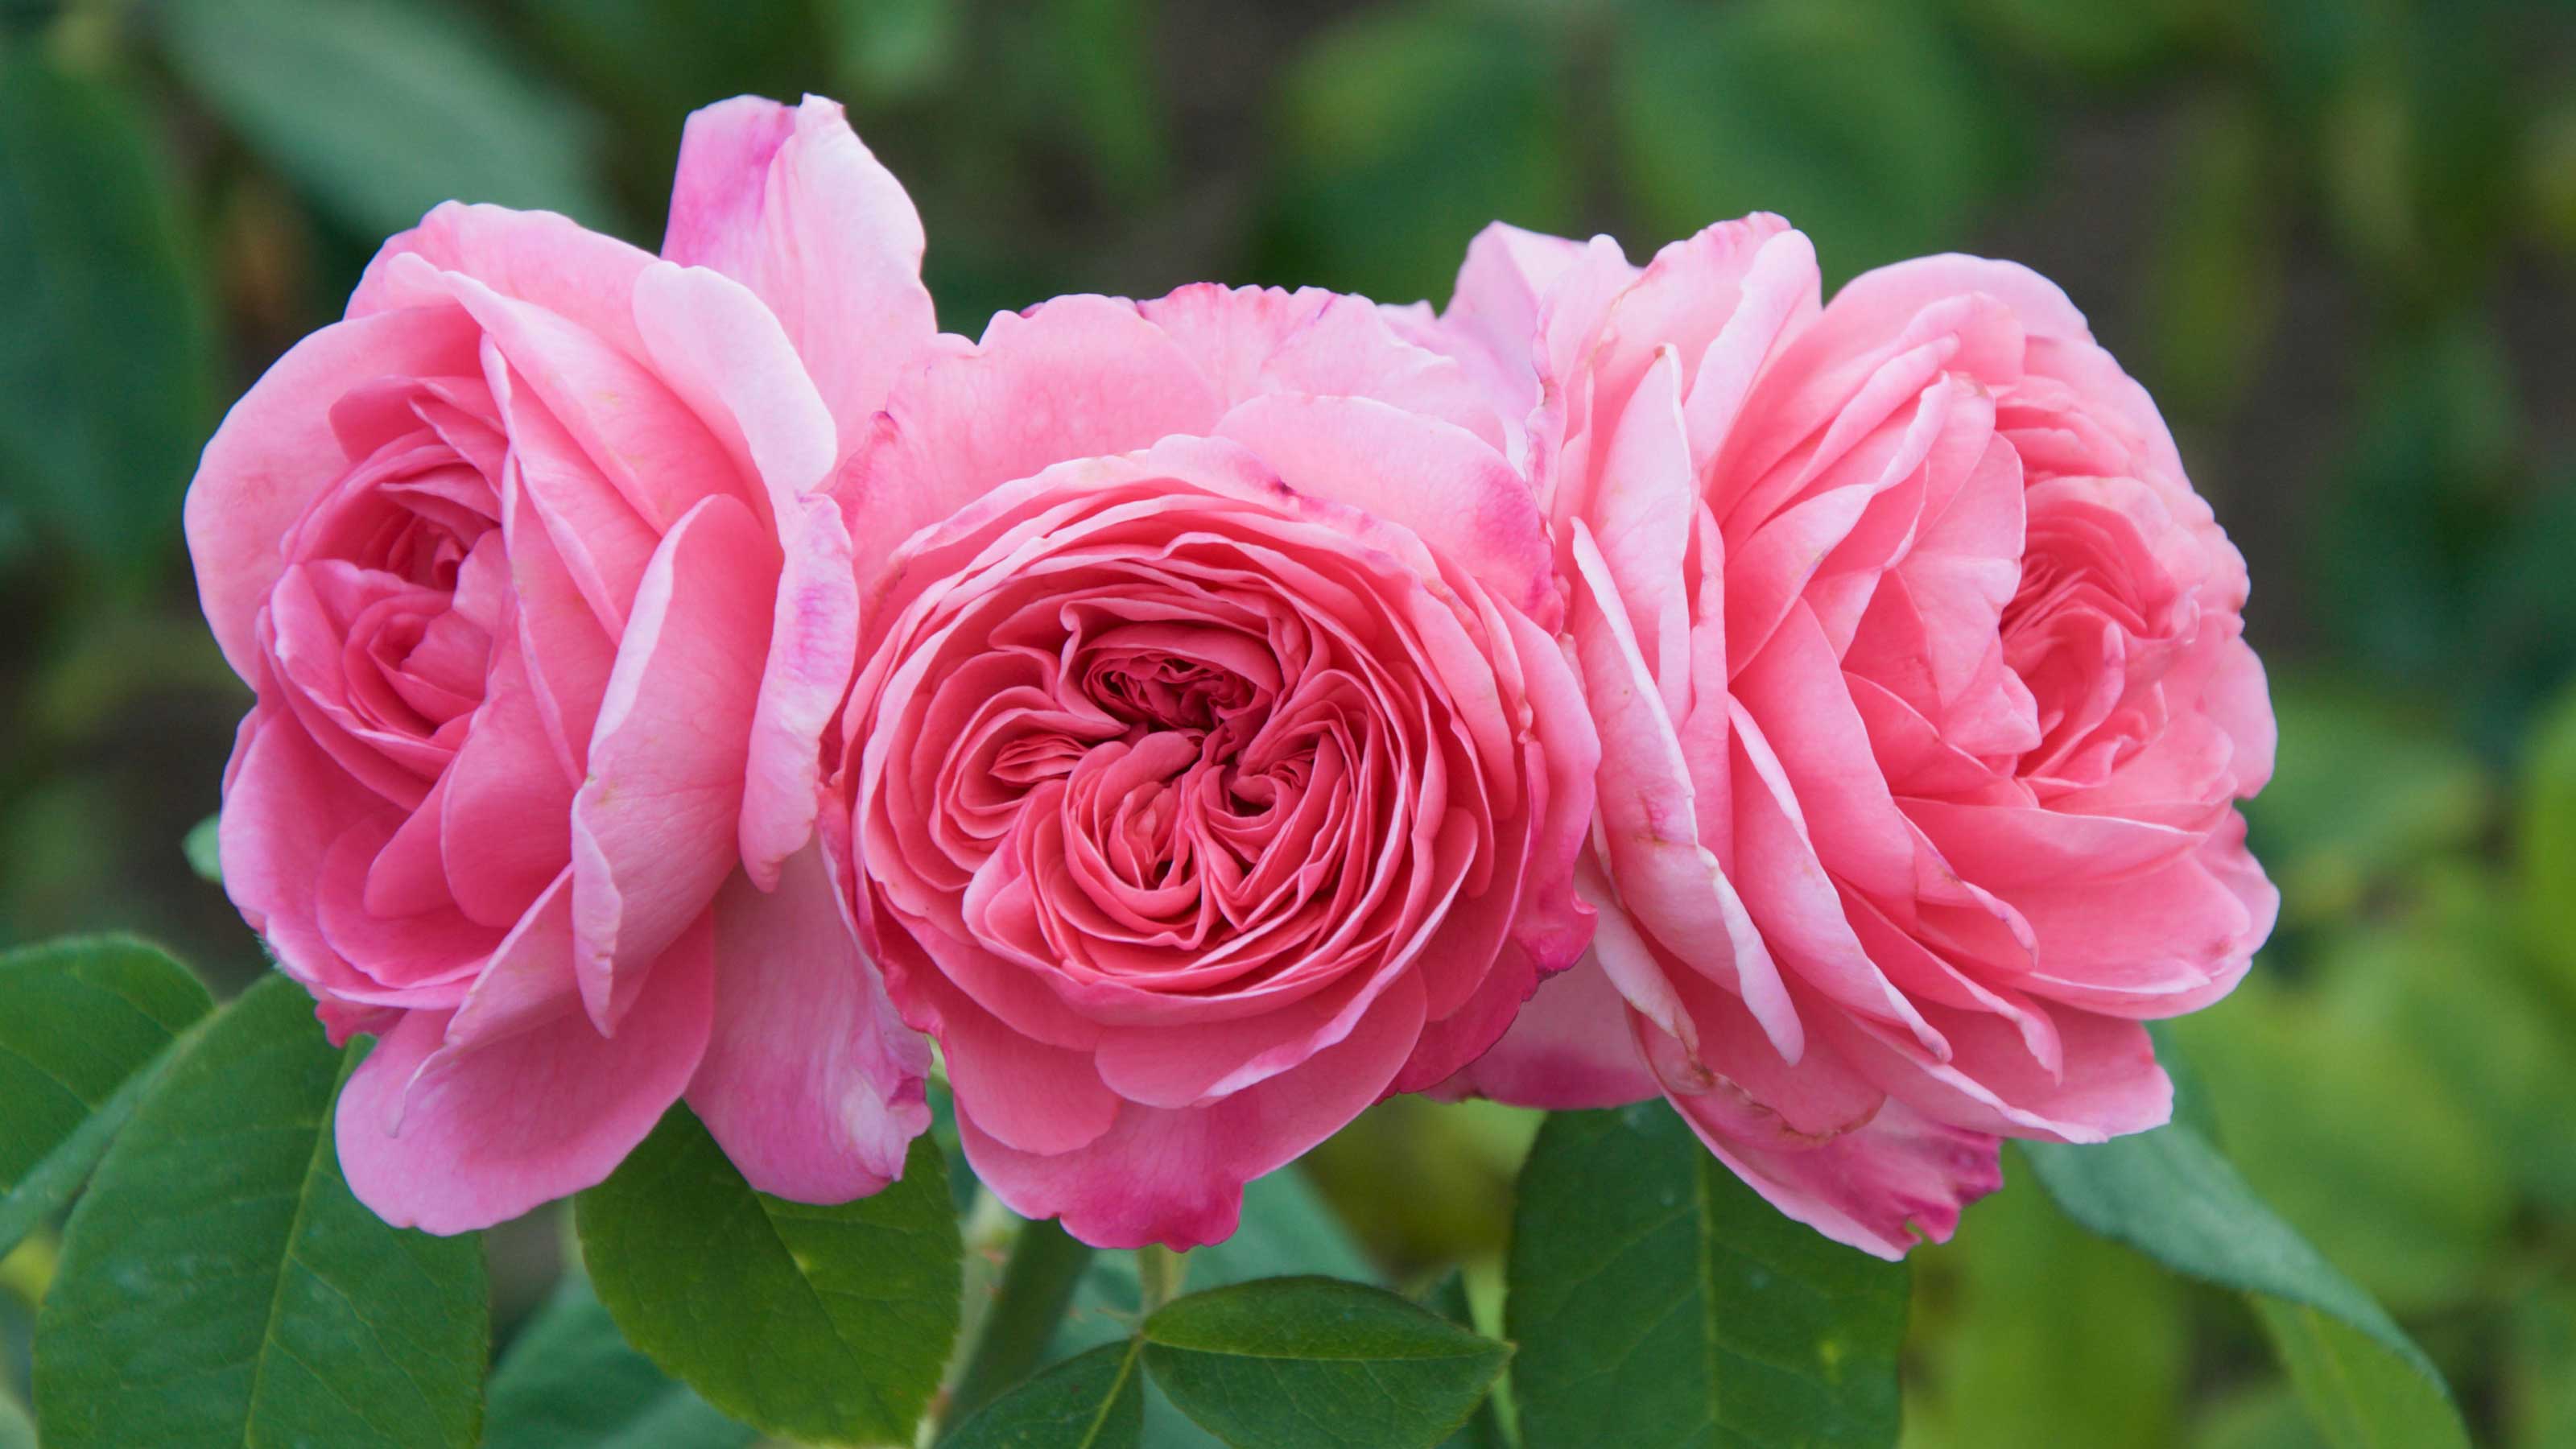 Hoa hồng mãi mãi nở rộ, tươi đẹp và thơm ngát. Không còn phải lo lắng về việc hoa chỉ nở trong một vài ngày, hãy khám phá loạt hoa hồng tái nở, mang đến niềm vui và sự kiêu hãnh với tình yêu vĩnh cửu của bạn.